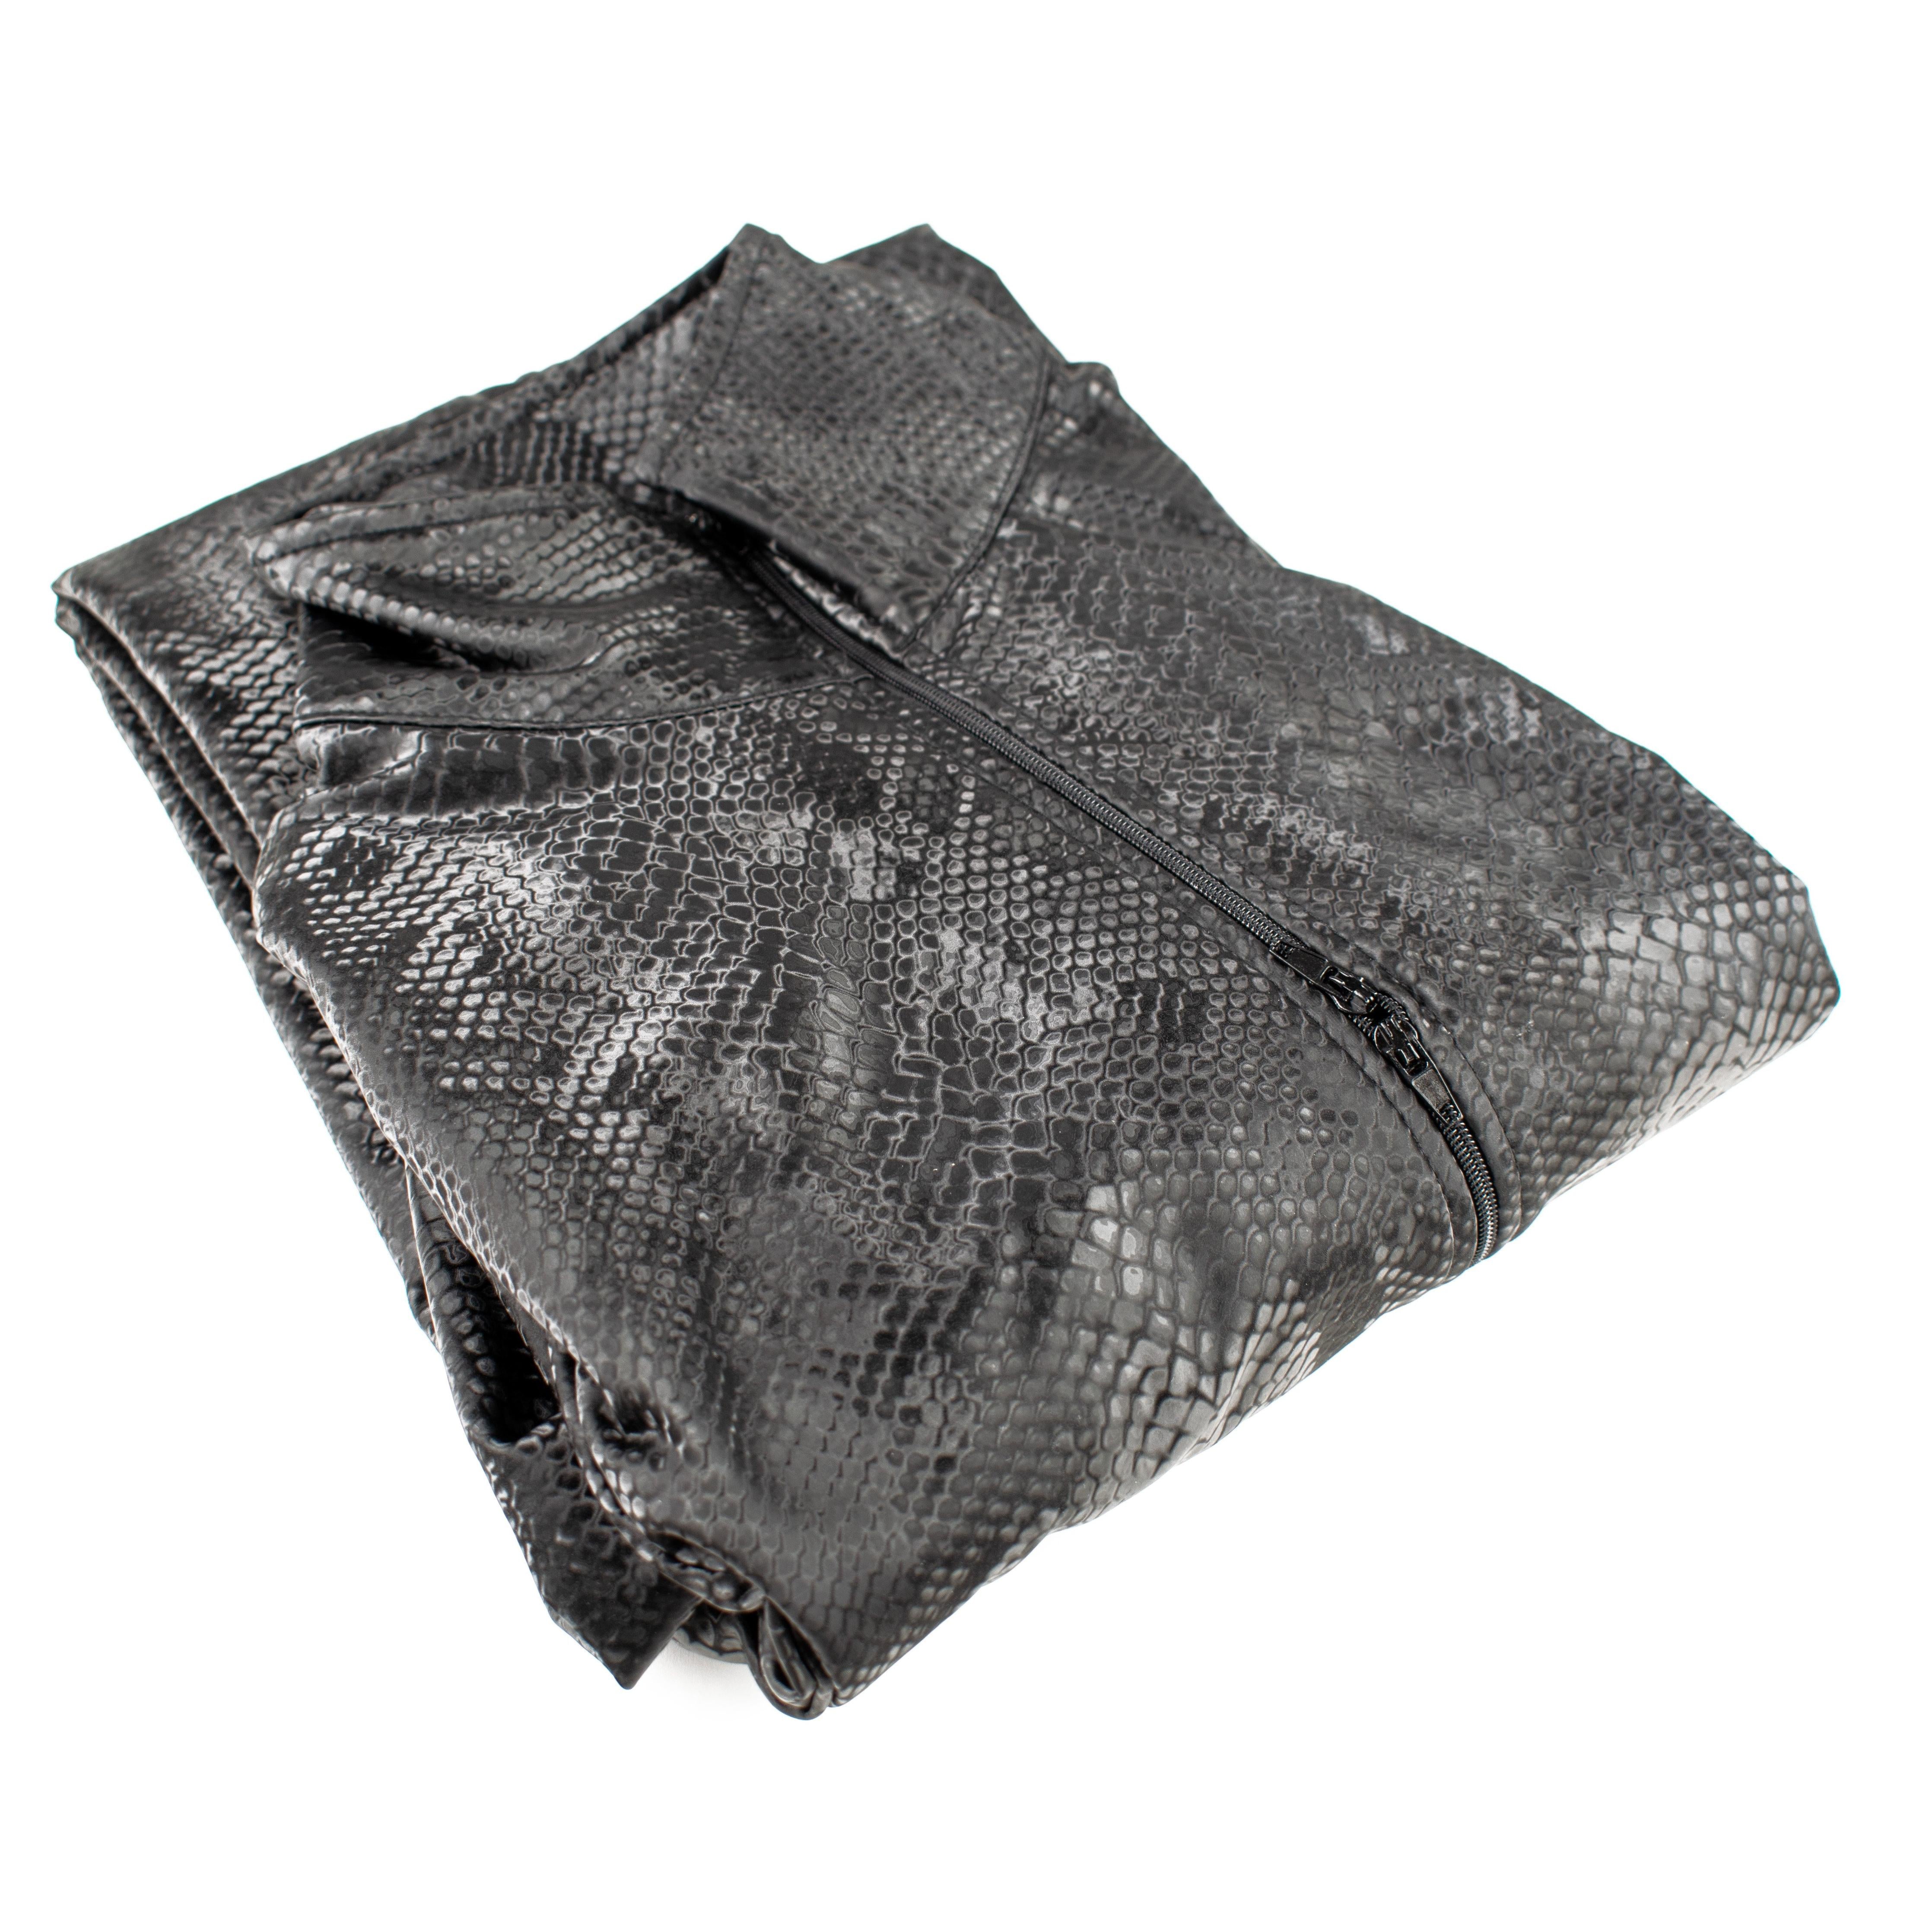 Rubberfashion Wetlook Catsuit ouvert - Schlangen Muster Anzug Jumpsuit Overall langarm mit 3 Wege Reißverschluss für Damen